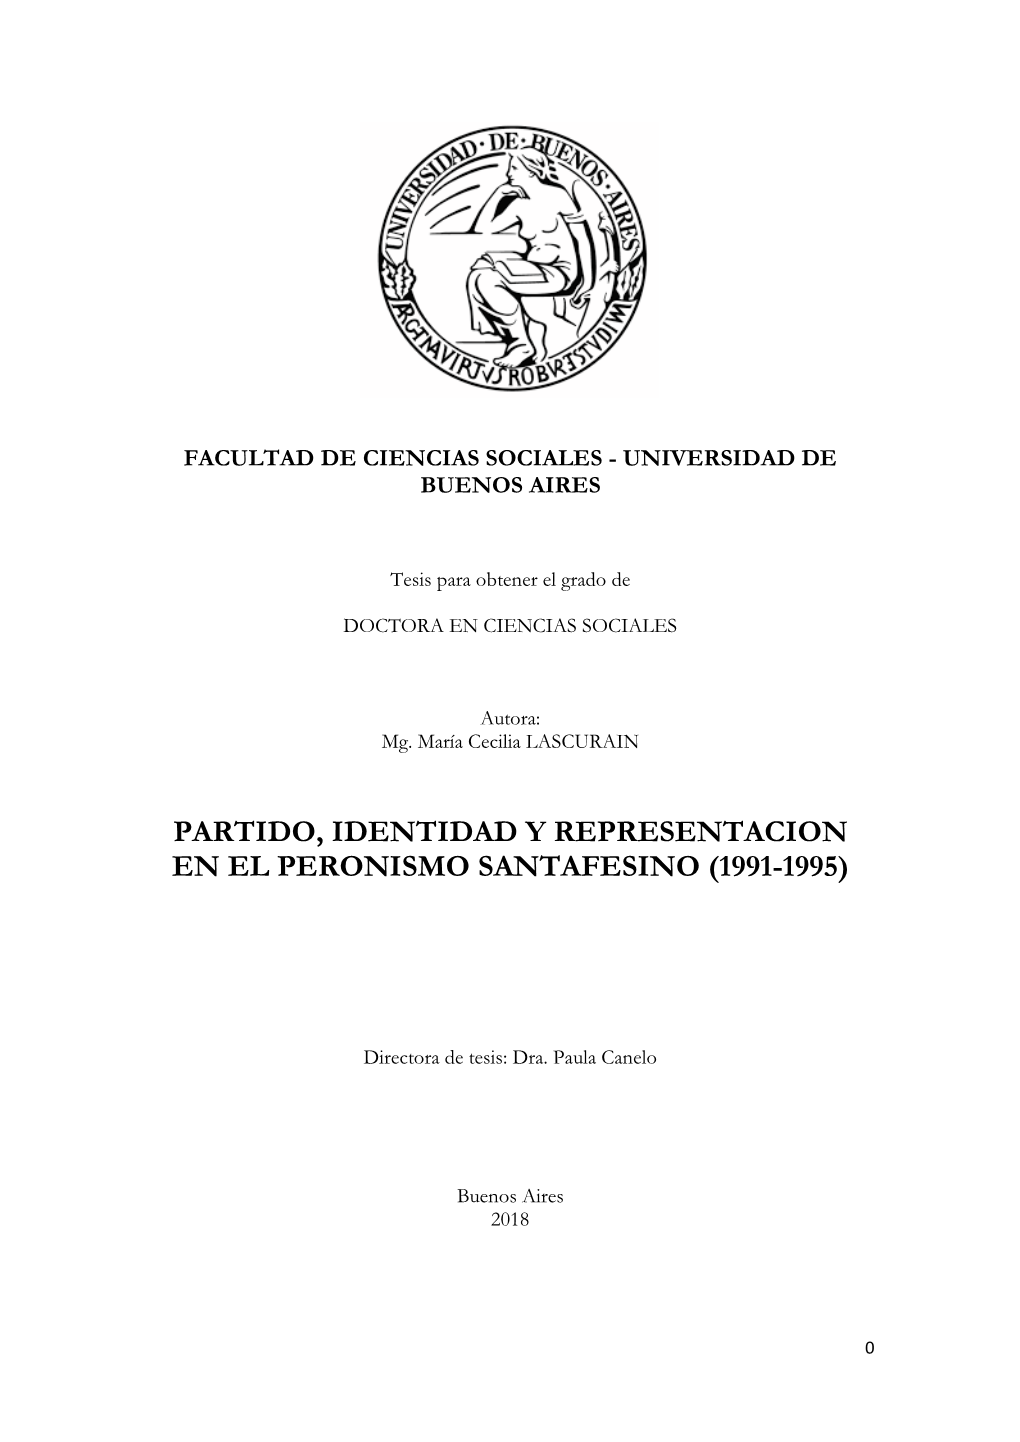 Partido, Identidad Y Representacion En El Peronismo Santafesino (1991-1995)